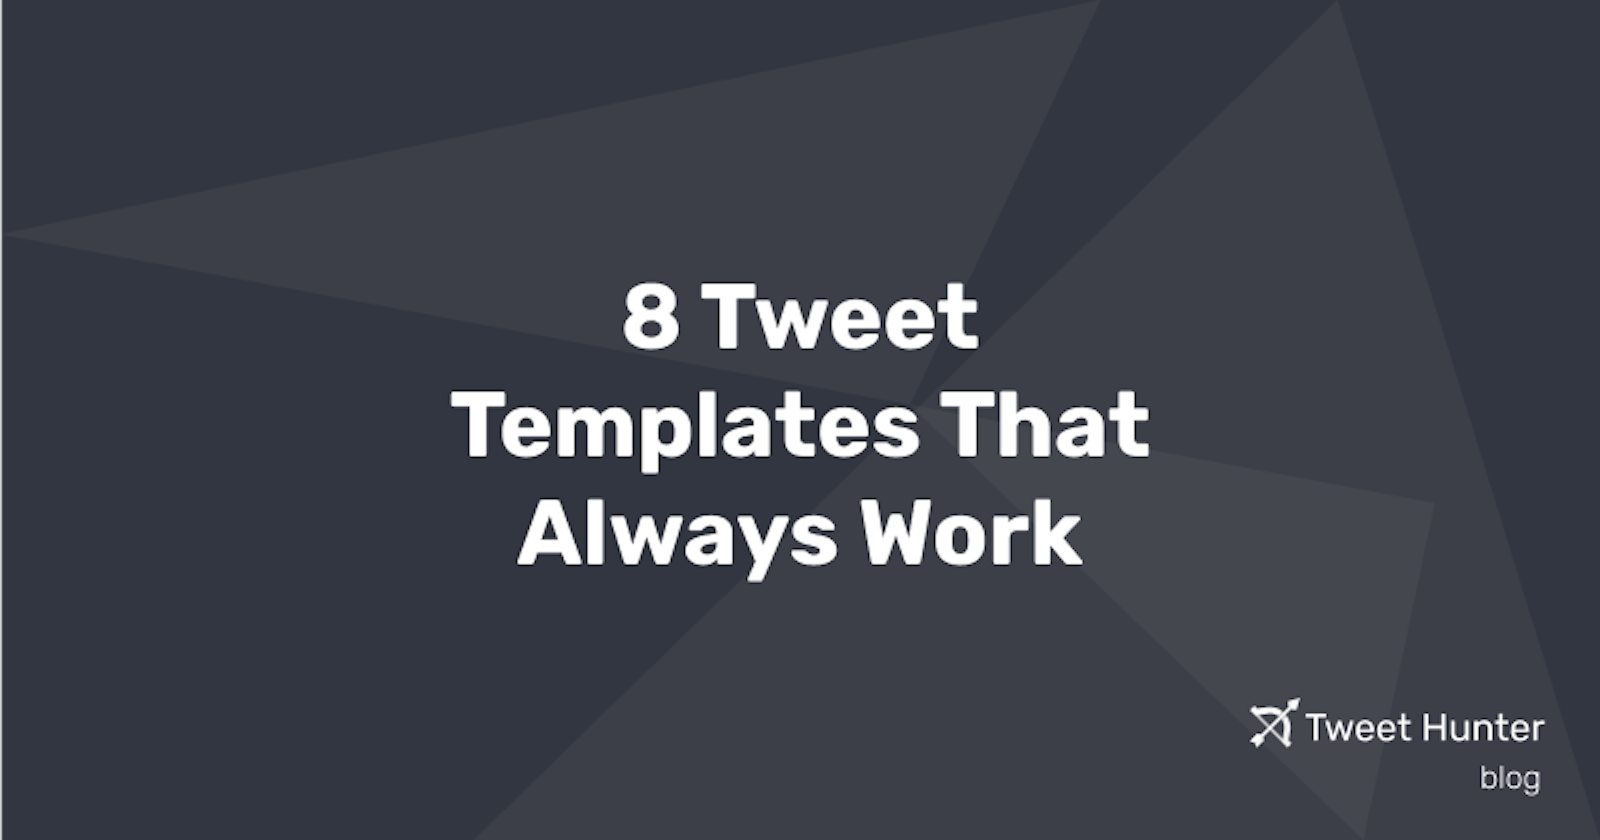 8 Tweet Templates That Always Work